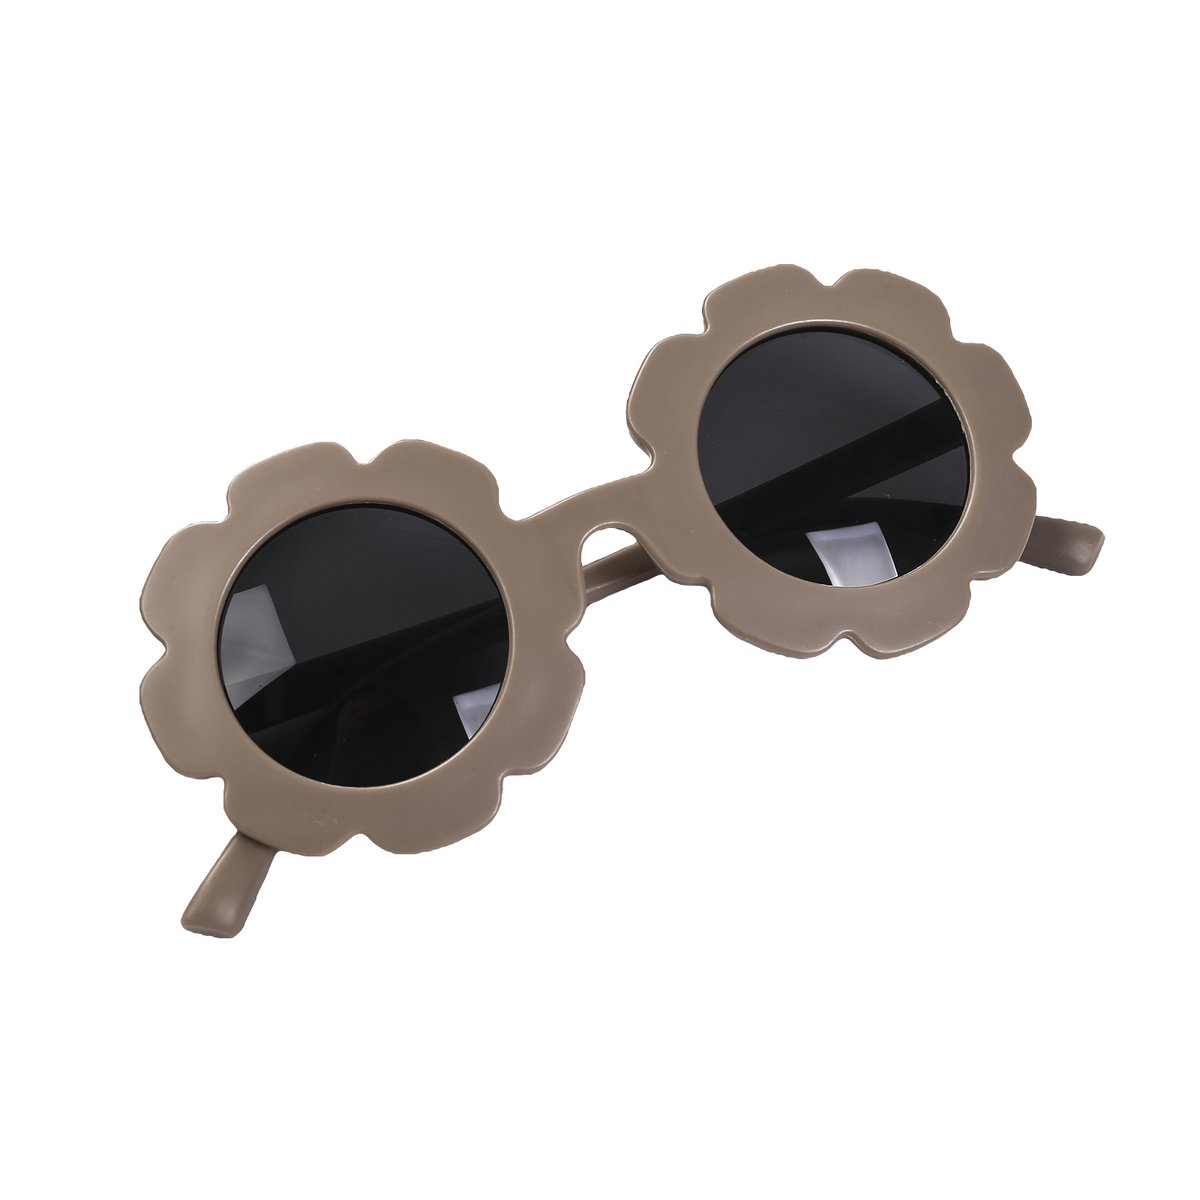 Maesy - kinderzonnebril Sunny - bloem zonnebril voor kinderen - peuters - jongens en meisjes - UV400 bescherming - hippe retro bril rond - taupe